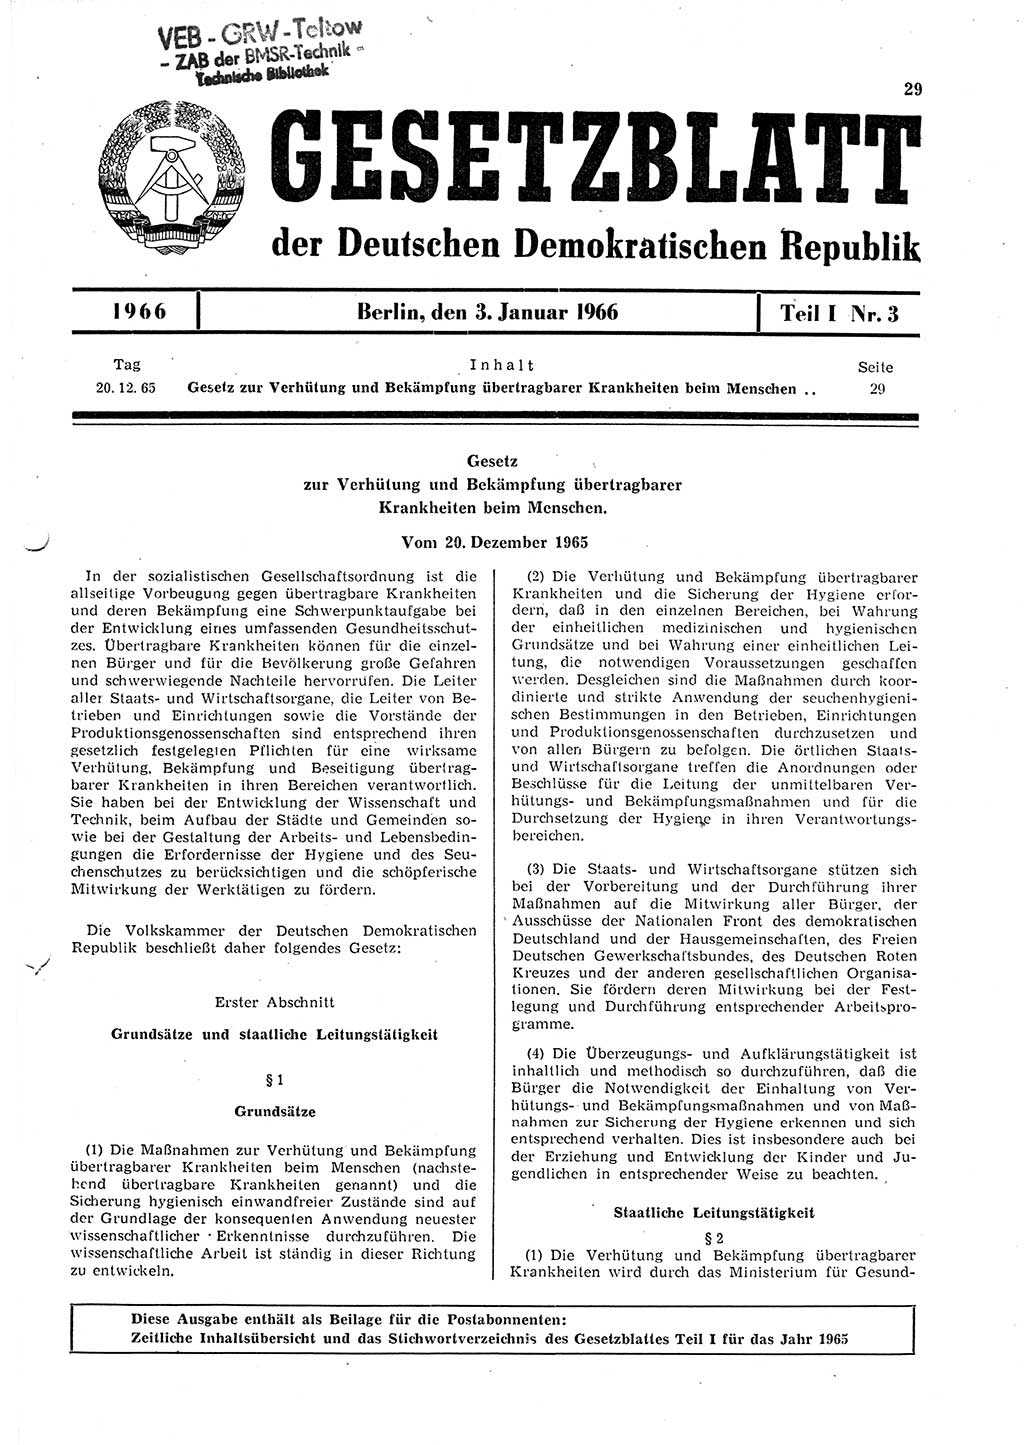 Gesetzblatt (GBl.) der Deutschen Demokratischen Republik (DDR) Teil Ⅰ 1966, Seite 29 (GBl. DDR Ⅰ 1966, S. 29)